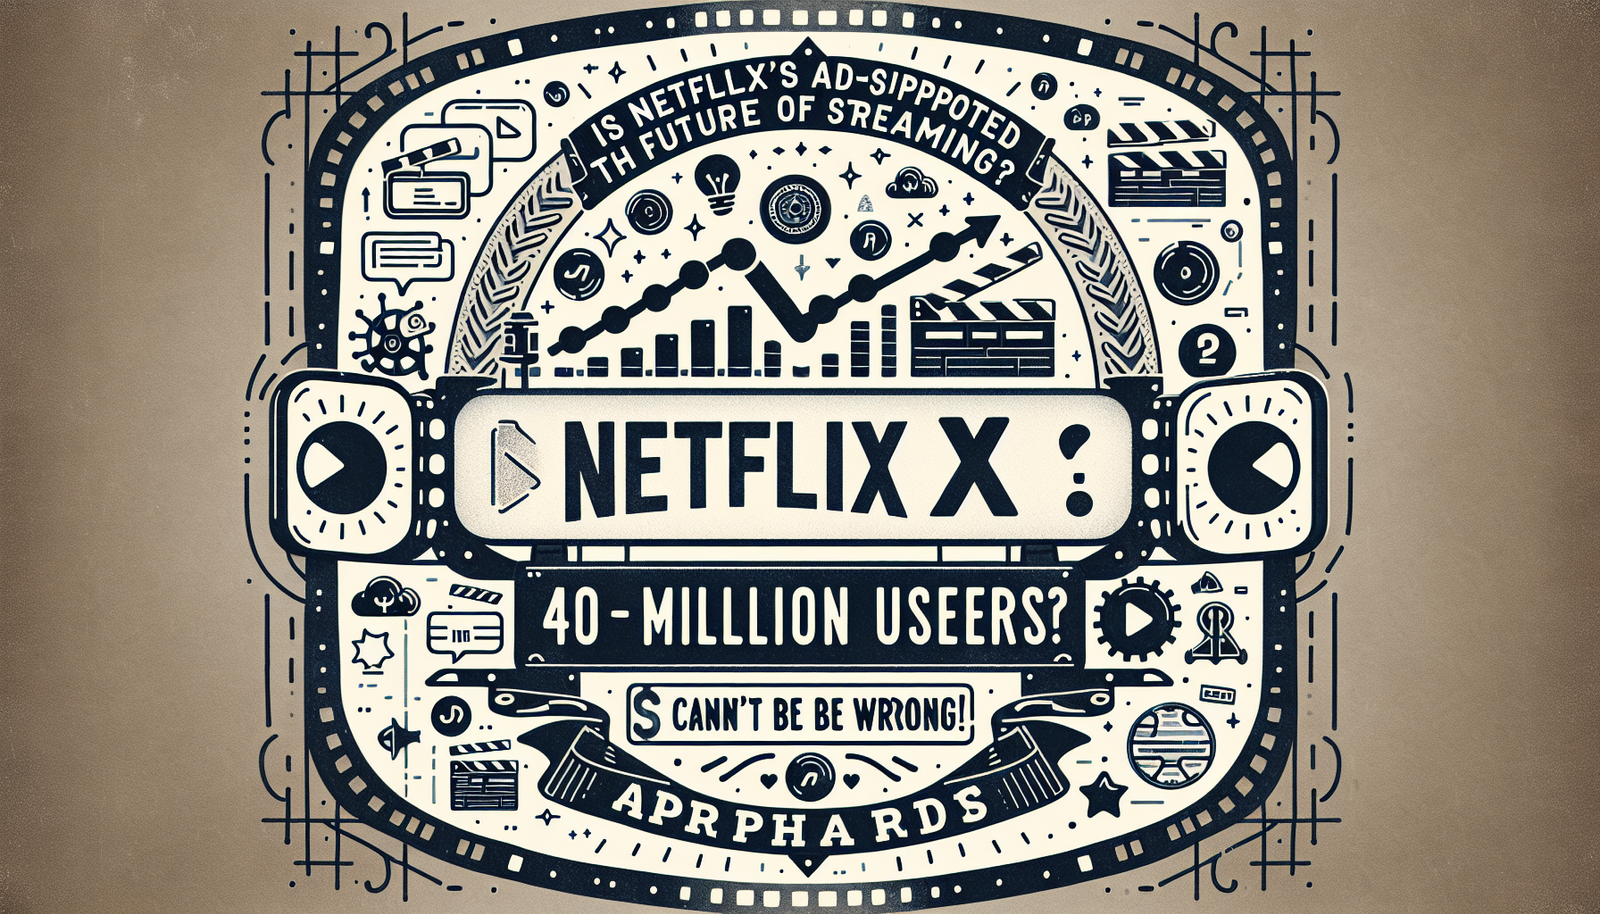 Erfahren Sie mehr über die potenzielle werbefinanzierte Stufe von Netflix und ihre Auswirkungen auf die Zukunft des Streamings. Entdecken Sie, warum 40 Millionen Benutzer dieses neue Modell annehmen.